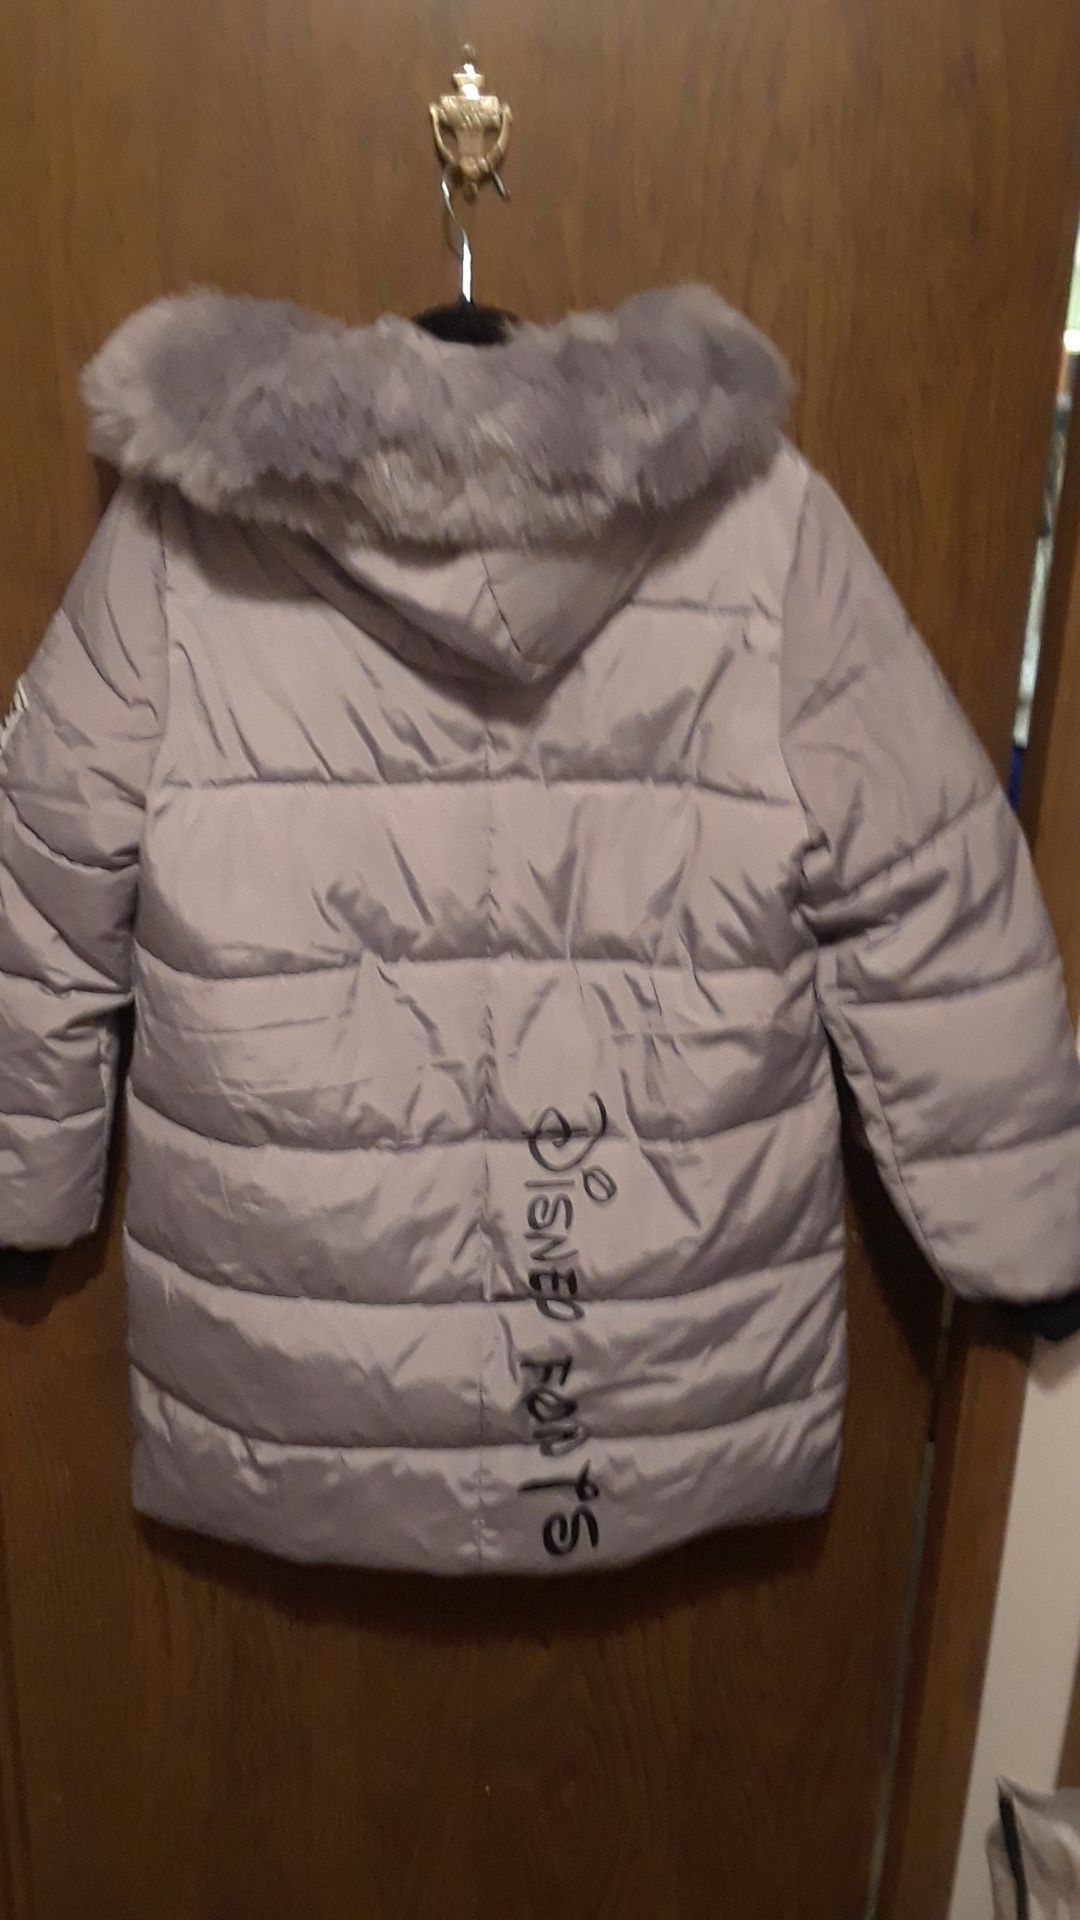 Caoboy jackets sacos Vaqueros, nuevos for Sale in Oxnard, CA - OfferUp